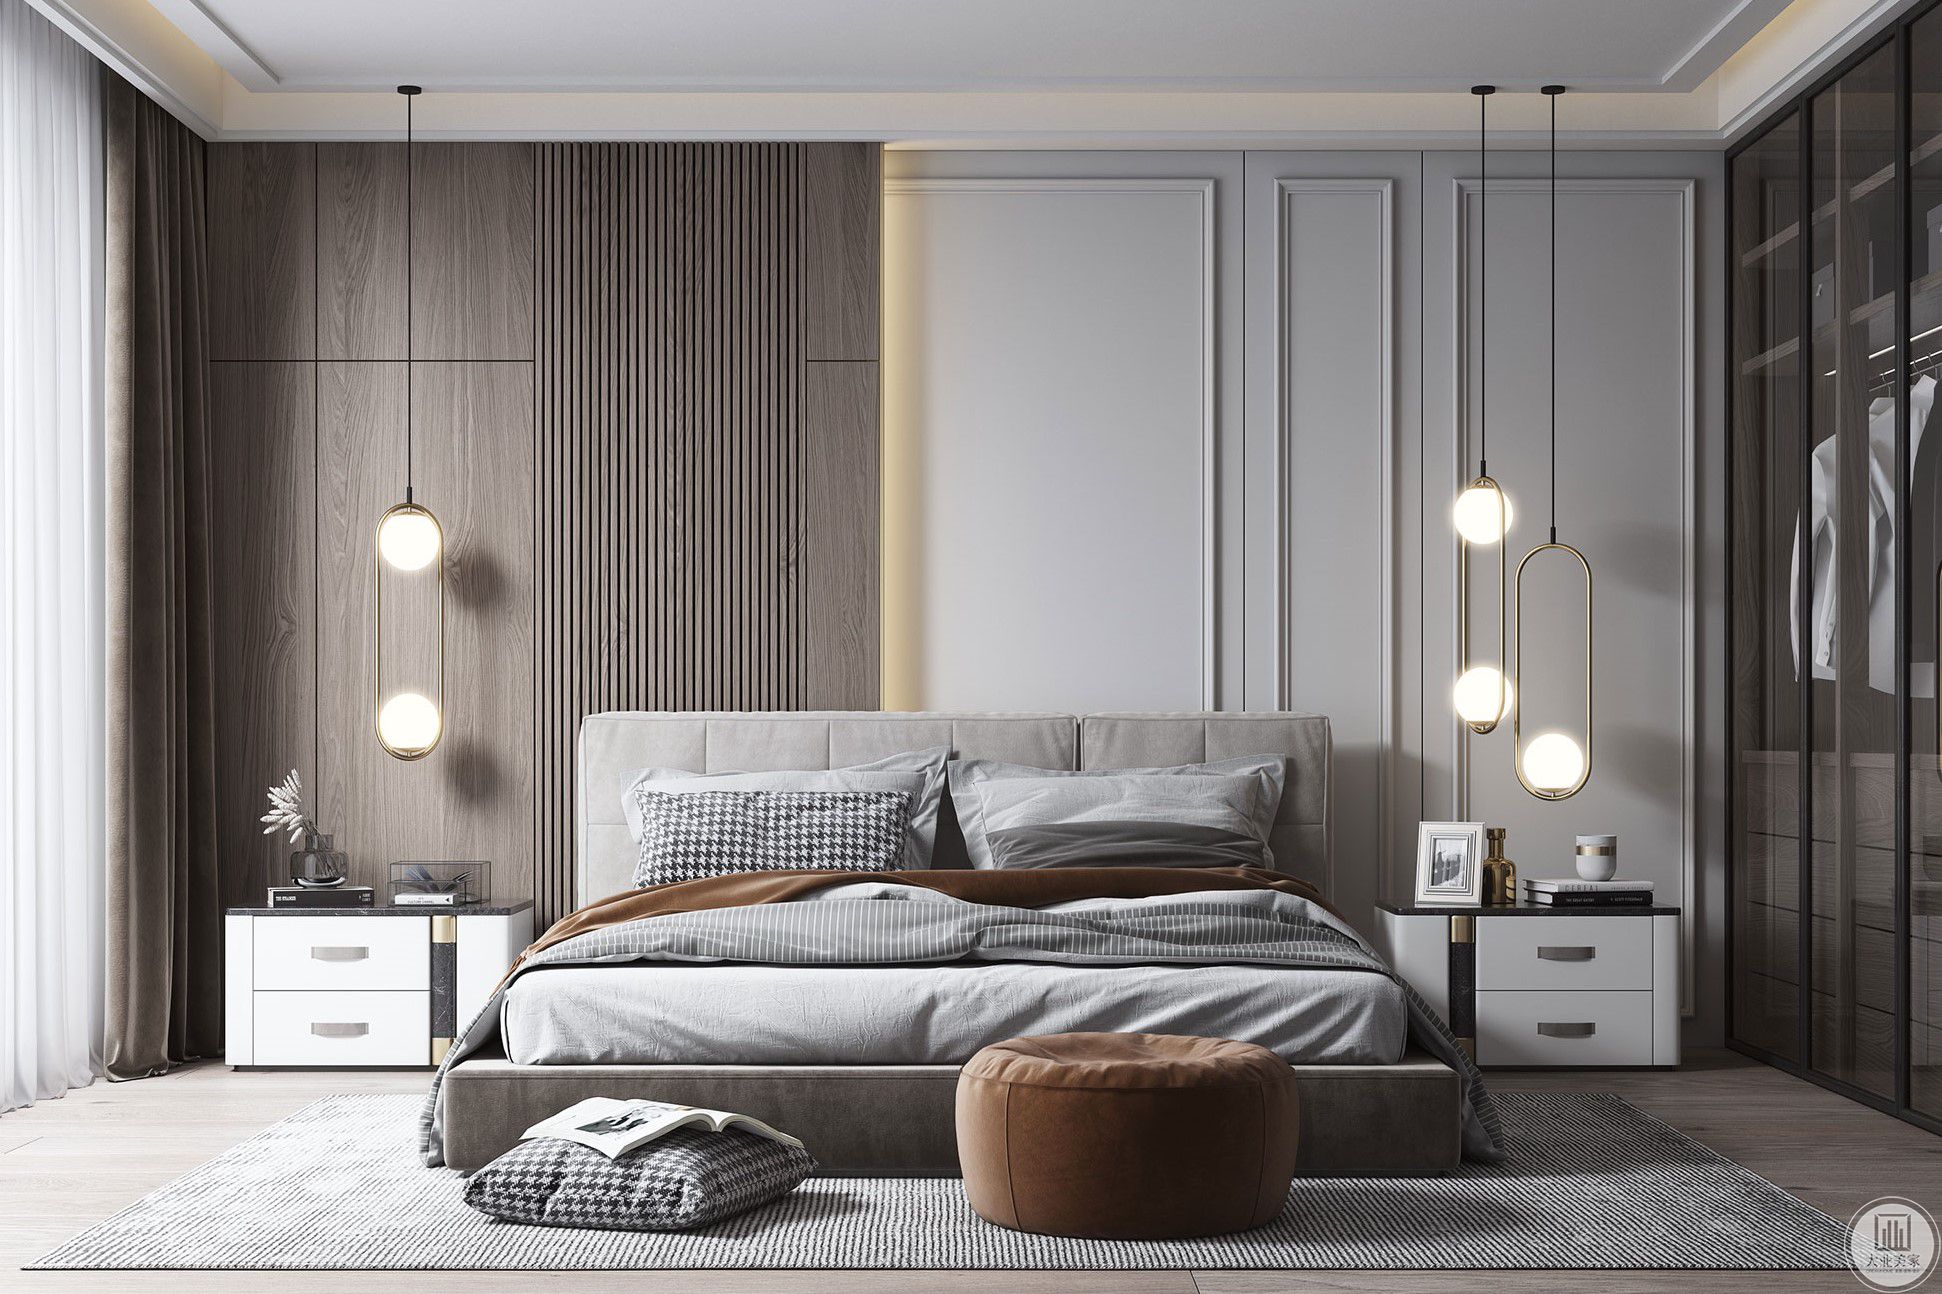 卧室床头背景采用了木质墙板于灰色乳胶漆的拼色，搭配温暖的灯光，增加墙面层次感的同时又给人一种温馨的氛围